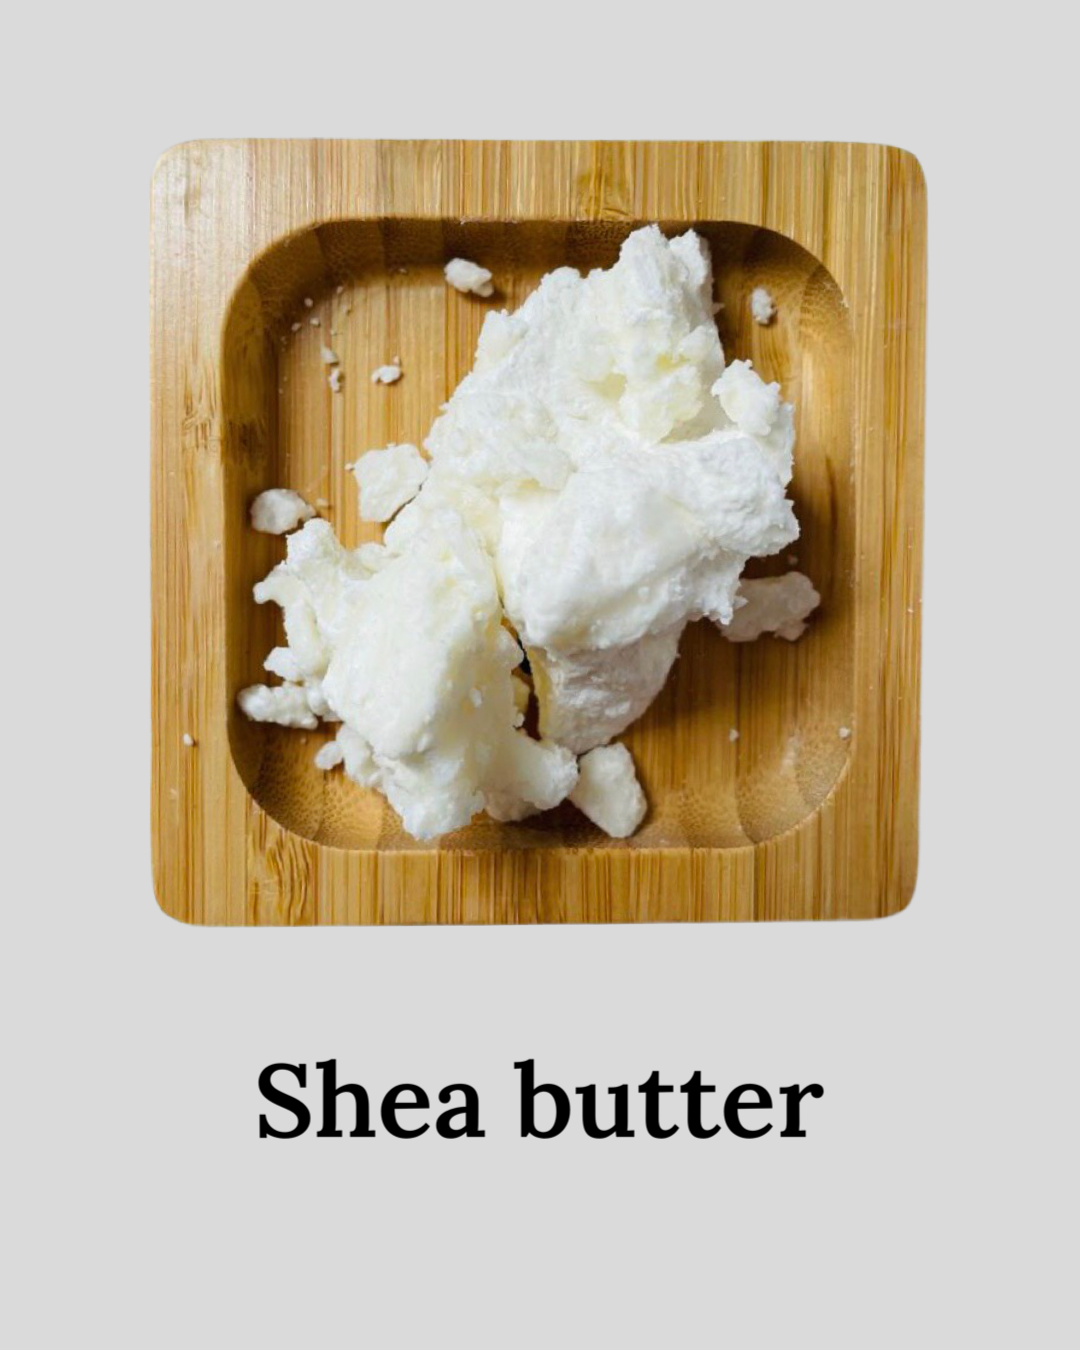 Shea nut butter